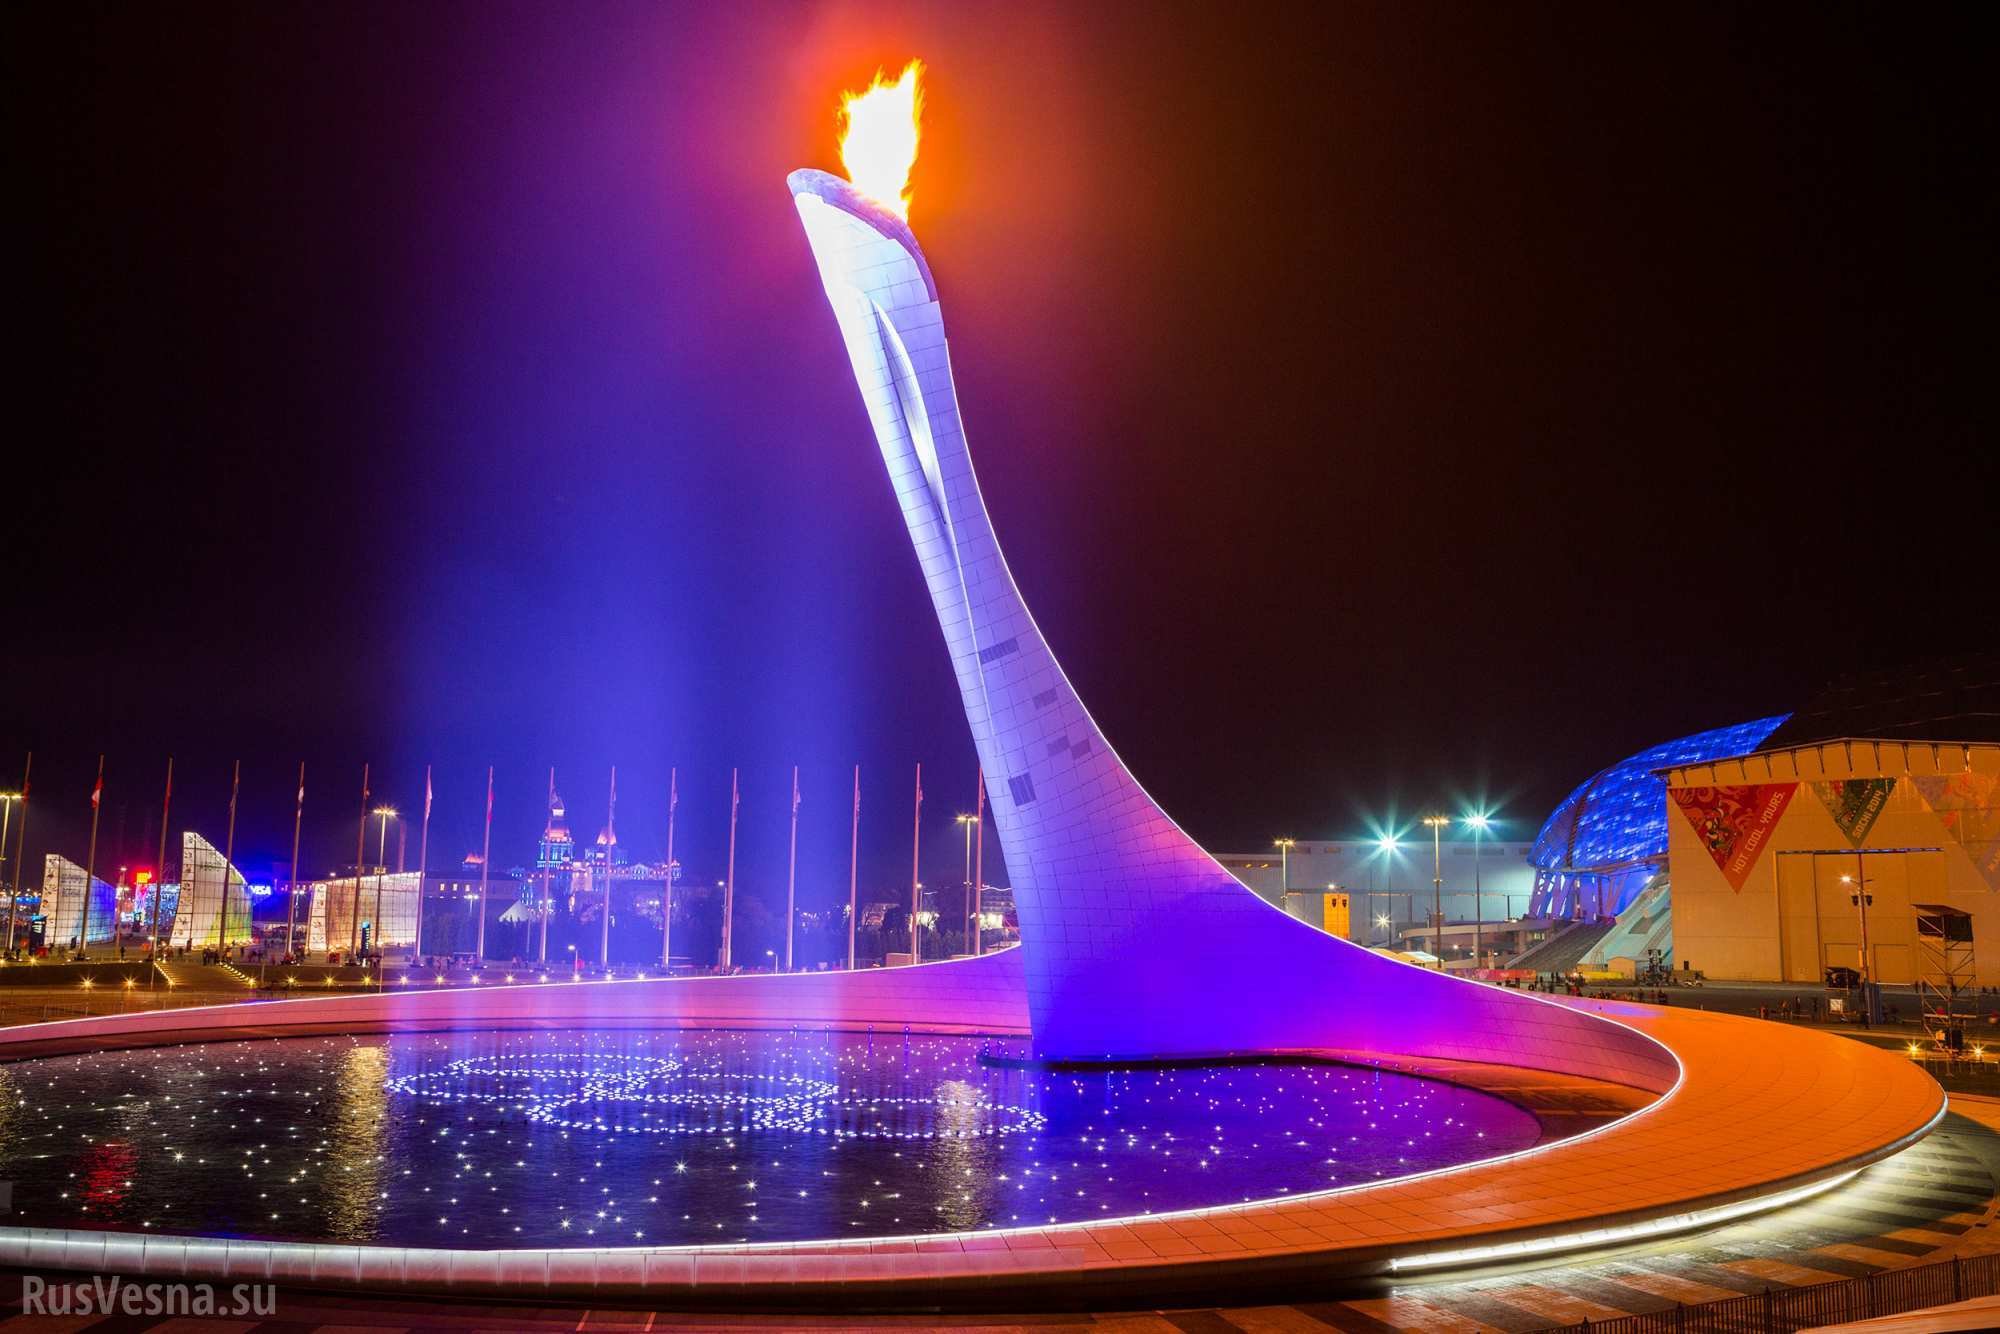 Сочи олимпийская страна. Факел Сочи Олимпийский парк. Сириус Сочи фонтан. Олимпийский парк Сочи ночью. Олимпийский парк 2018 Сочи.